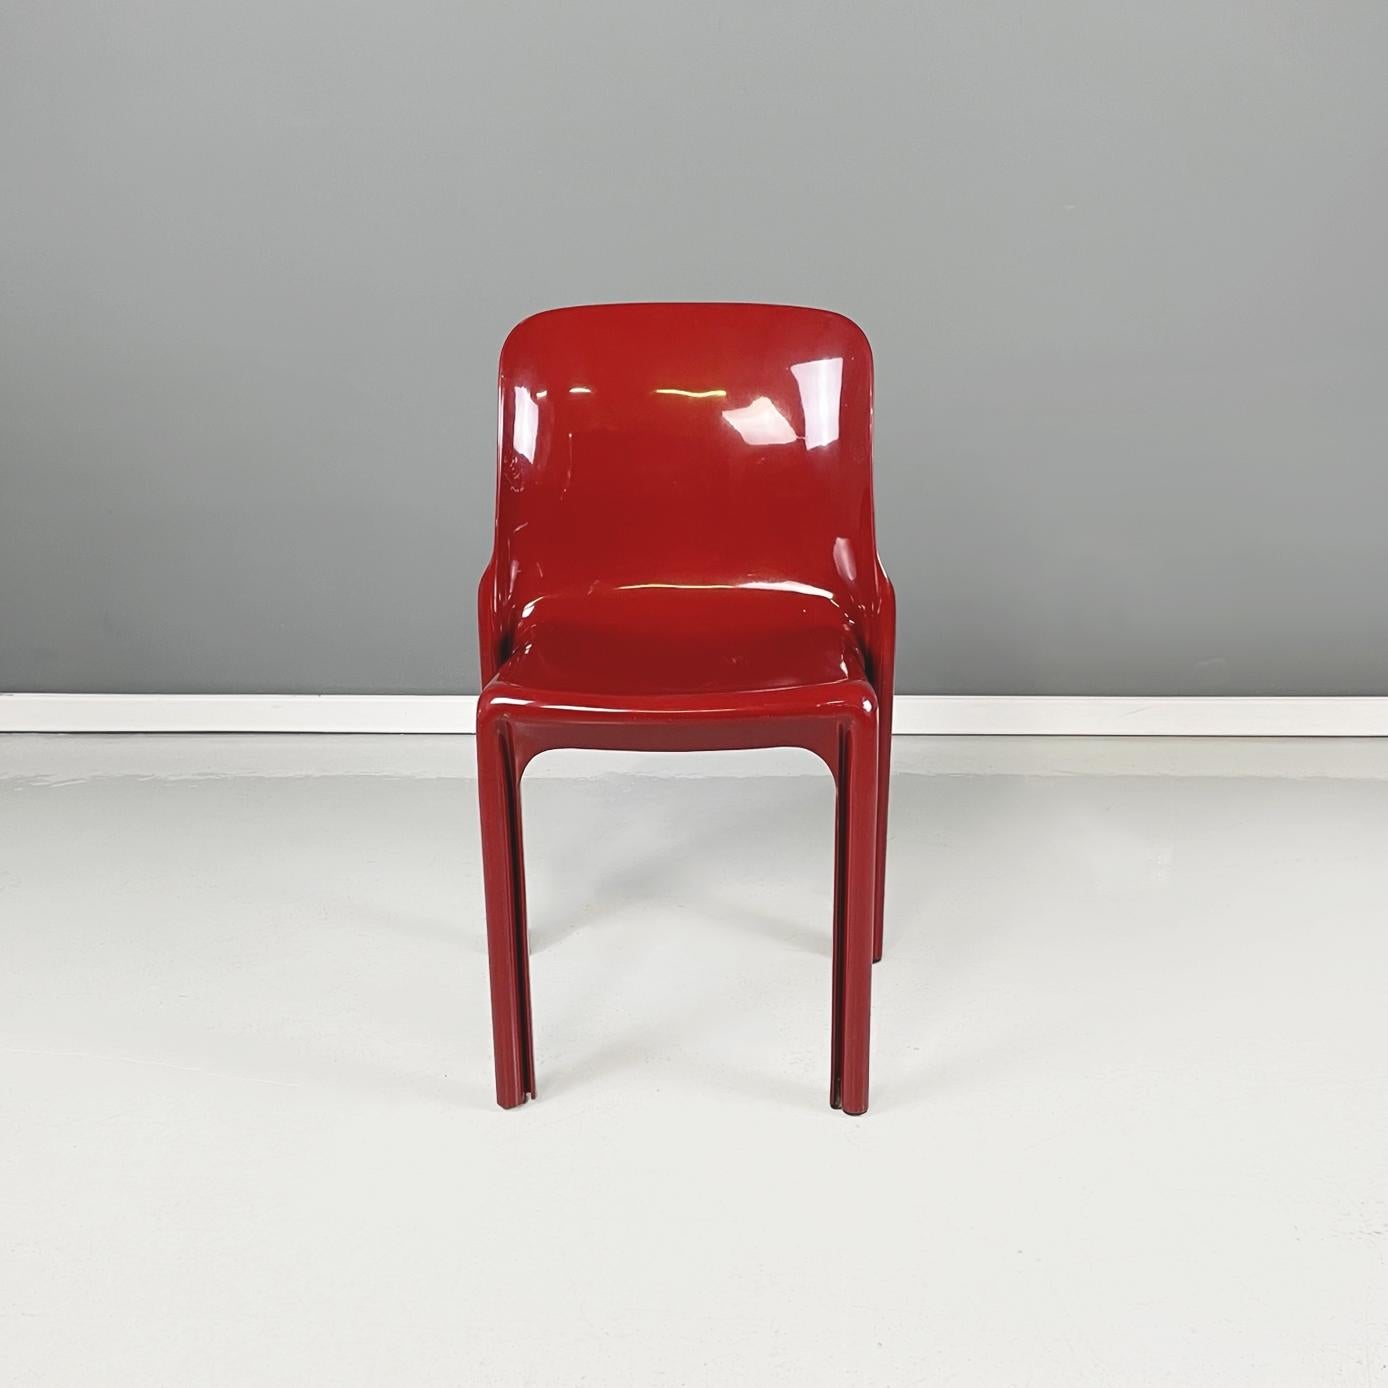 Chaises italiennes modernes en plastique rouge mod. Selene par Vico Magistretti pour Artemide, années 1960
Ensemble de 4 chaises iconiques mod. Selene en plastique rouge foncé-bordeaux avec assise carrée. La structure est monocoque avec des rainures